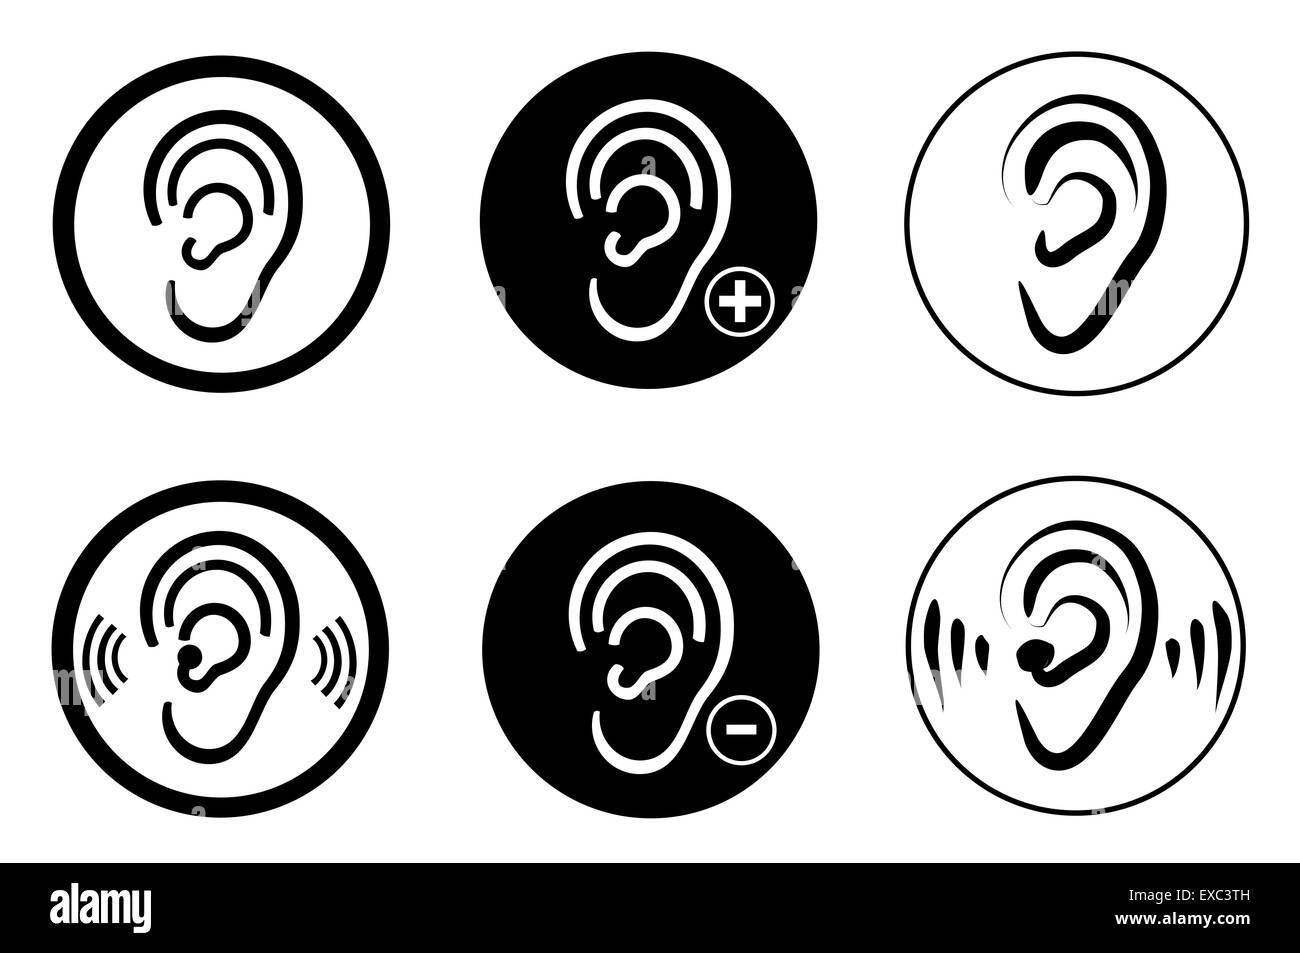 L'aide auditive de l'oreille problème sourds Banque D'Images